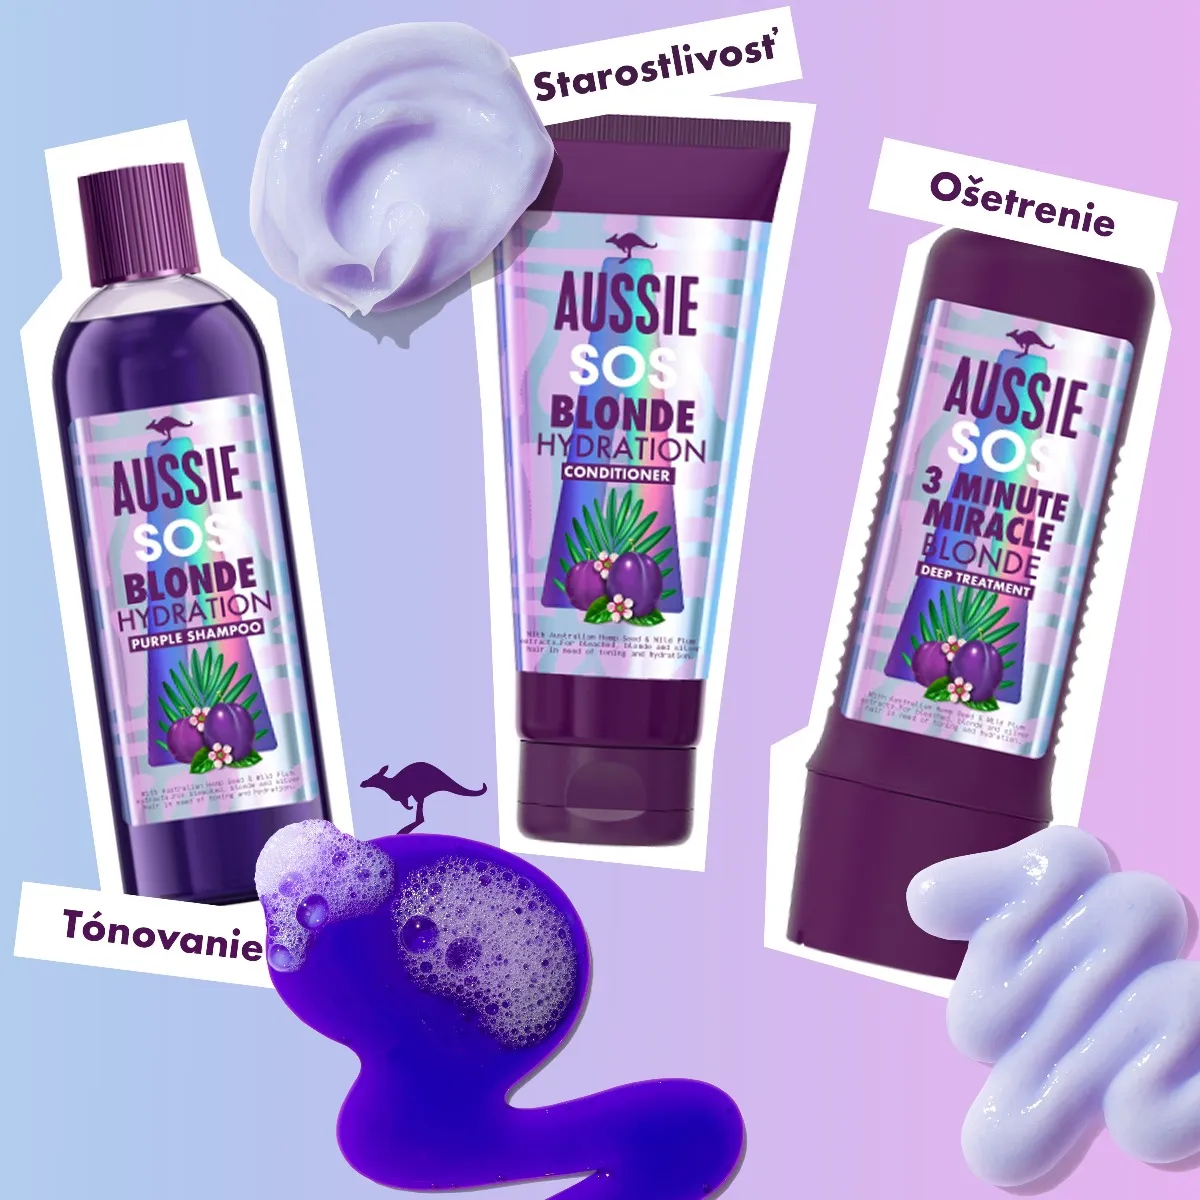 Aussie SOS Blonde Hydratačný fialový šampón 1×290ml, hydratačný šampón